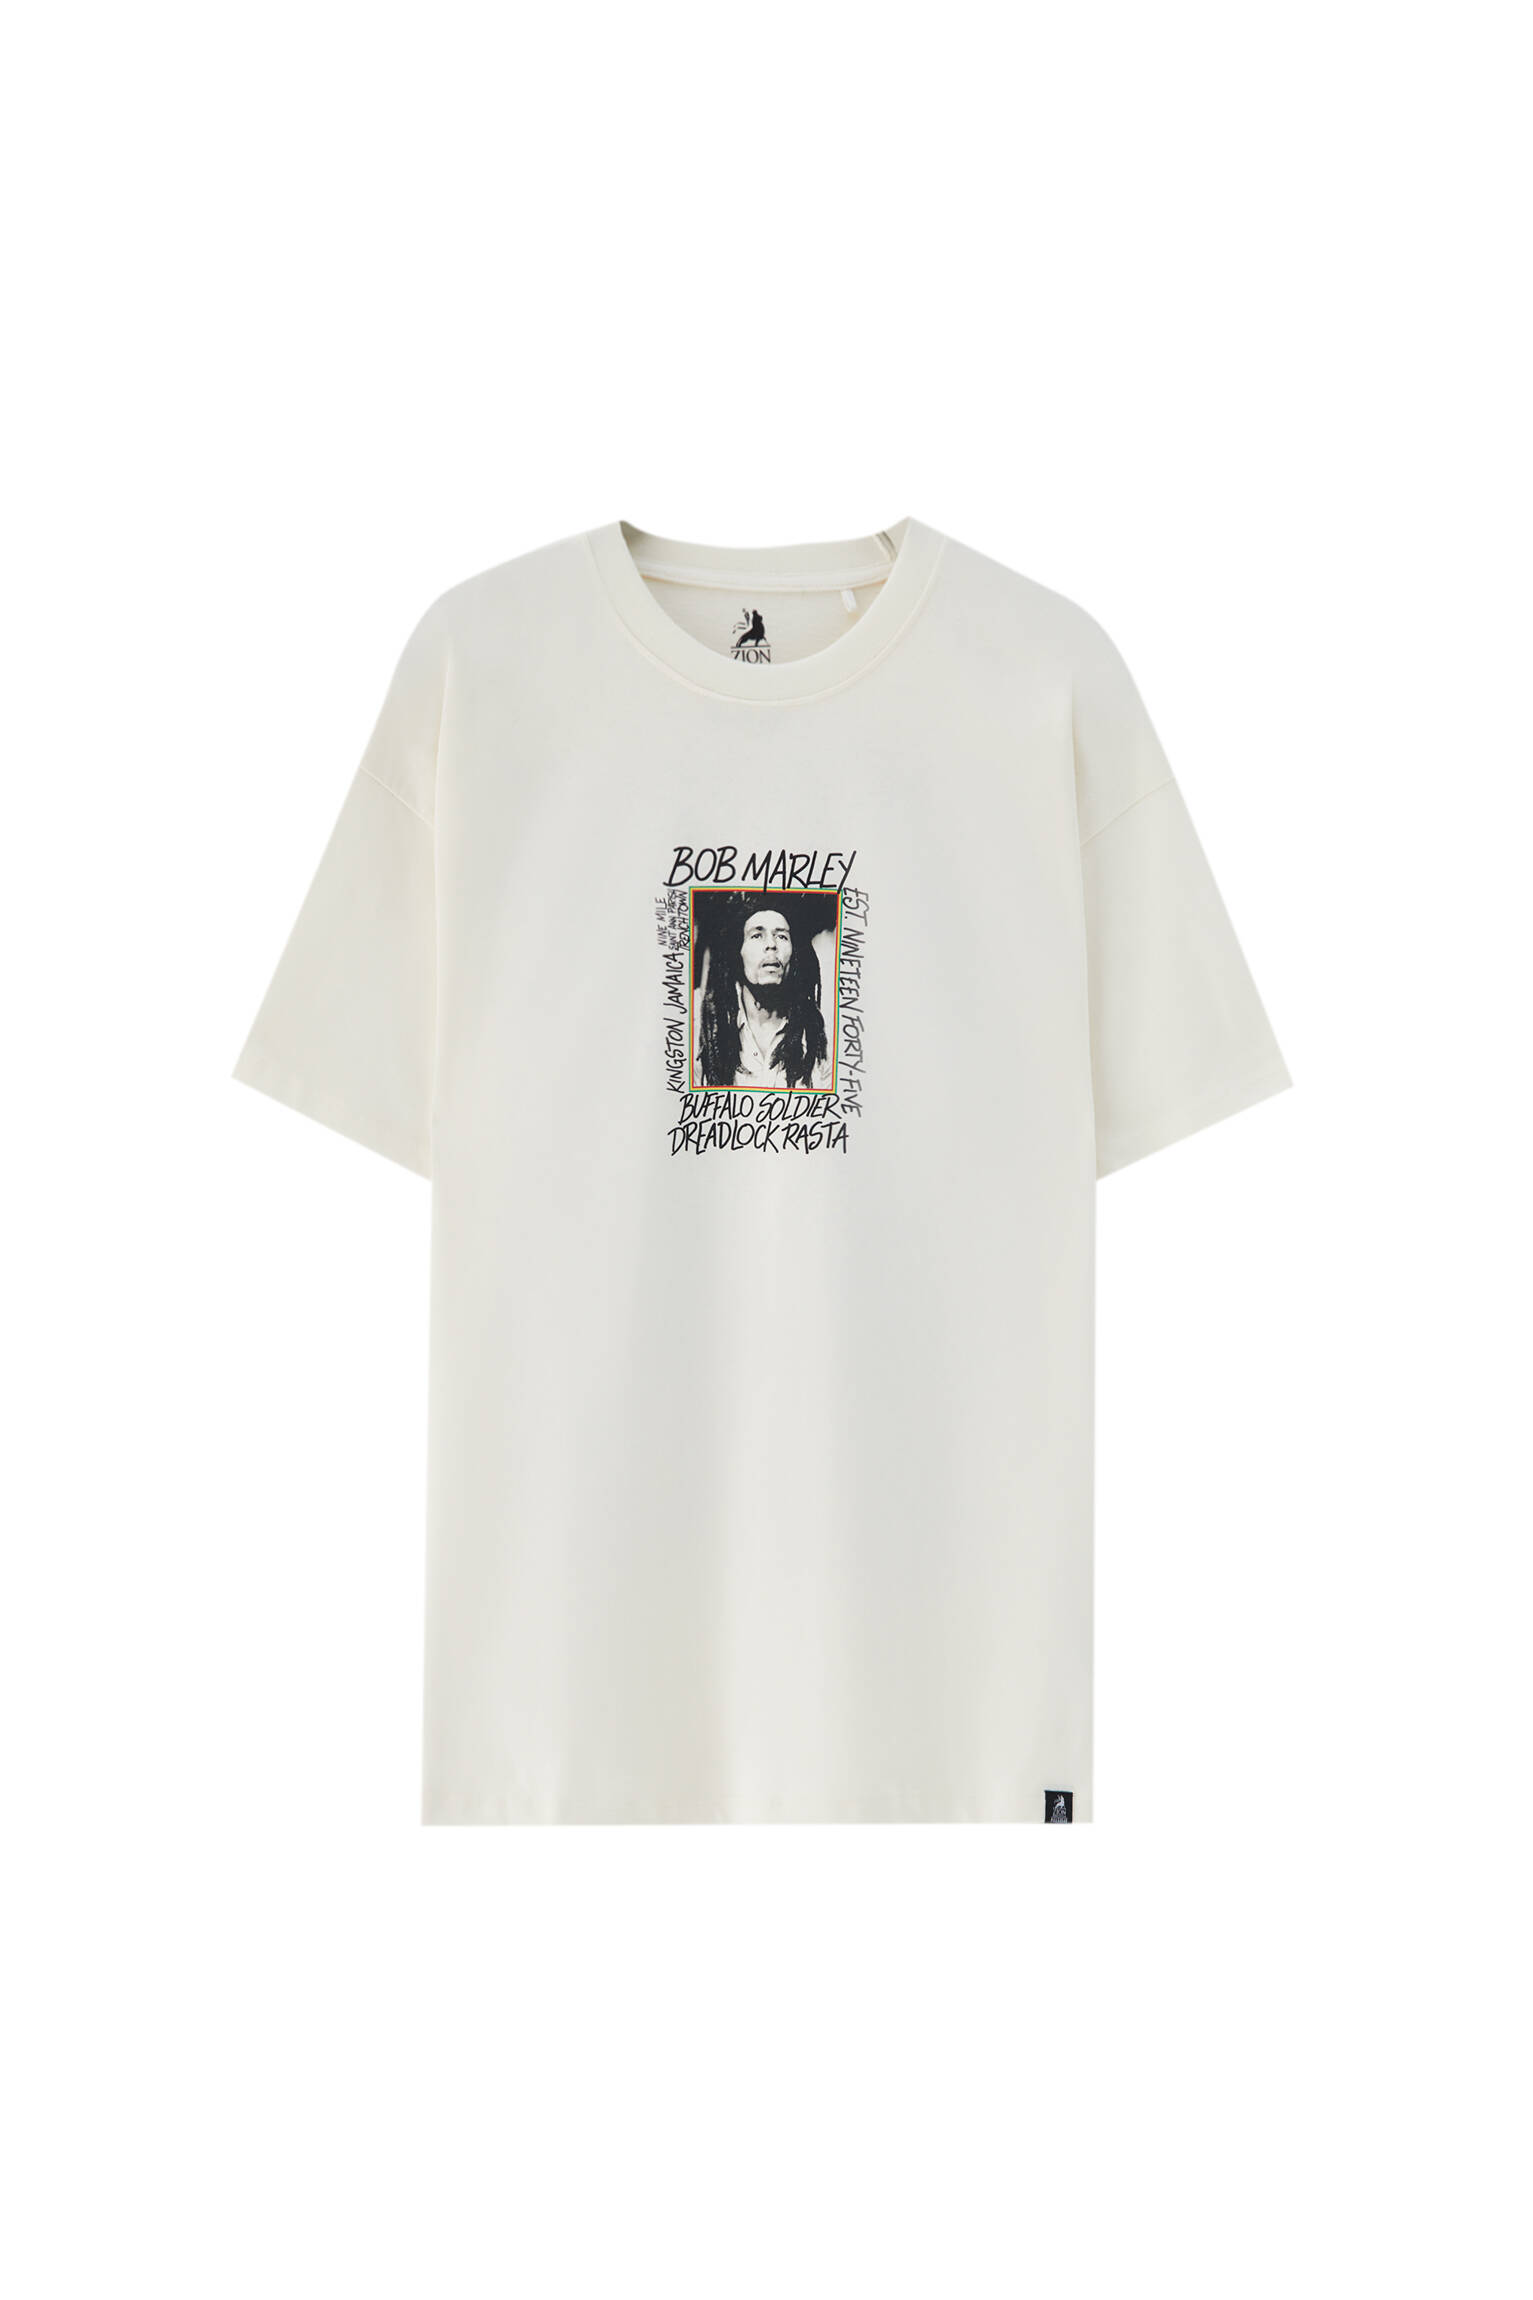 Pull&bear Homme T-shirt Blanc 100 % Coton à Manches Courtes Et Col Rond, Avec Illustration De Bob Ma